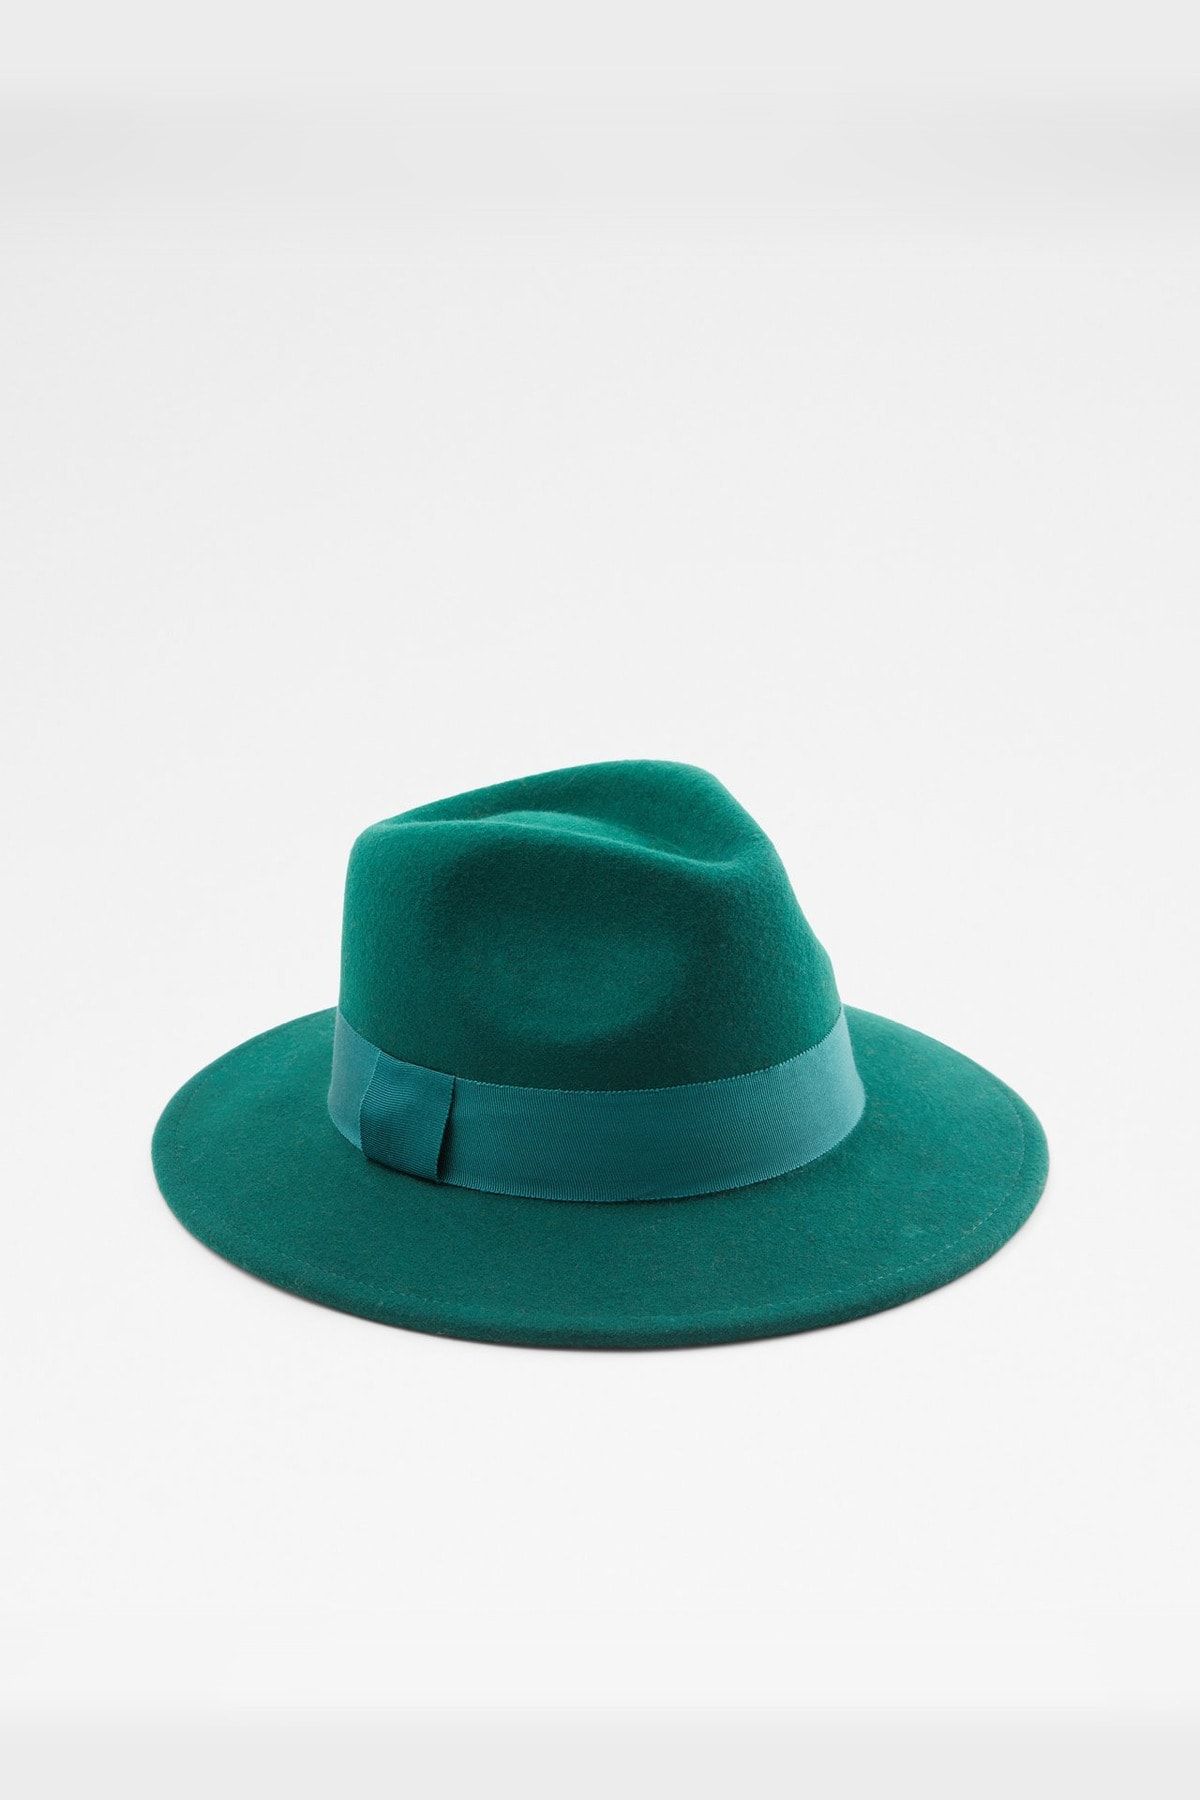 Aldo Nydaydda Yeşil Kadın Şapka